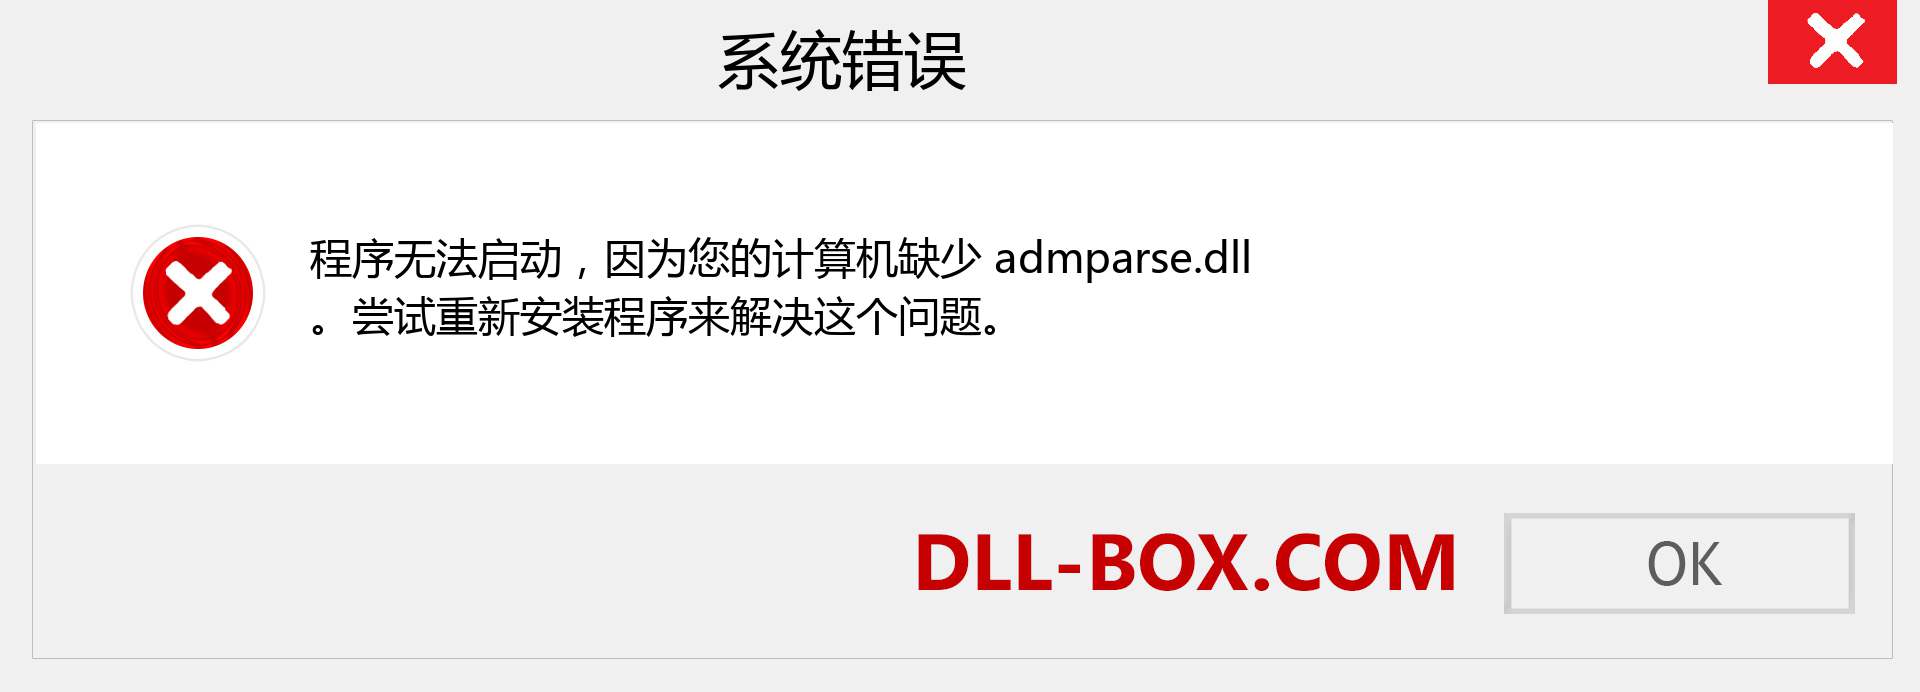 admparse.dll 文件丢失？。 适用于 Windows 7、8、10 的下载 - 修复 Windows、照片、图像上的 admparse dll 丢失错误